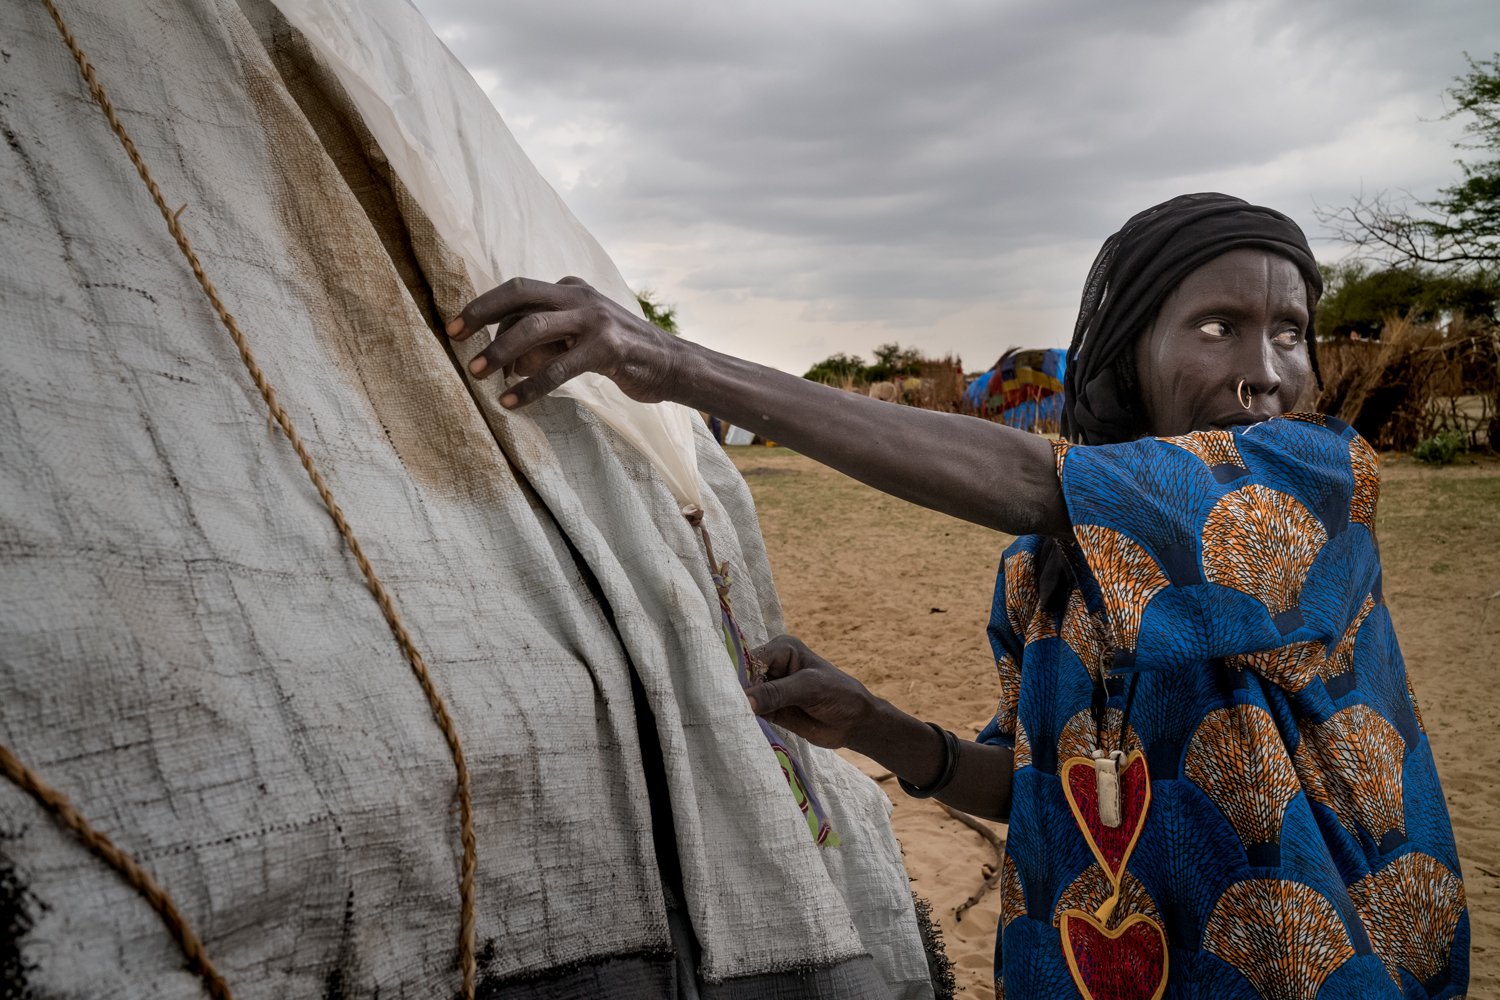  In der Regenzeit im Jahr 2021 schützt eine Frau im Tschad ihr Zelt mit einer Plastikplane vor dem aufziehenden Sturm. Aufgrund des Klimawandels sind  Niederschläge zuletzt immer unberechenbarer geworden. 